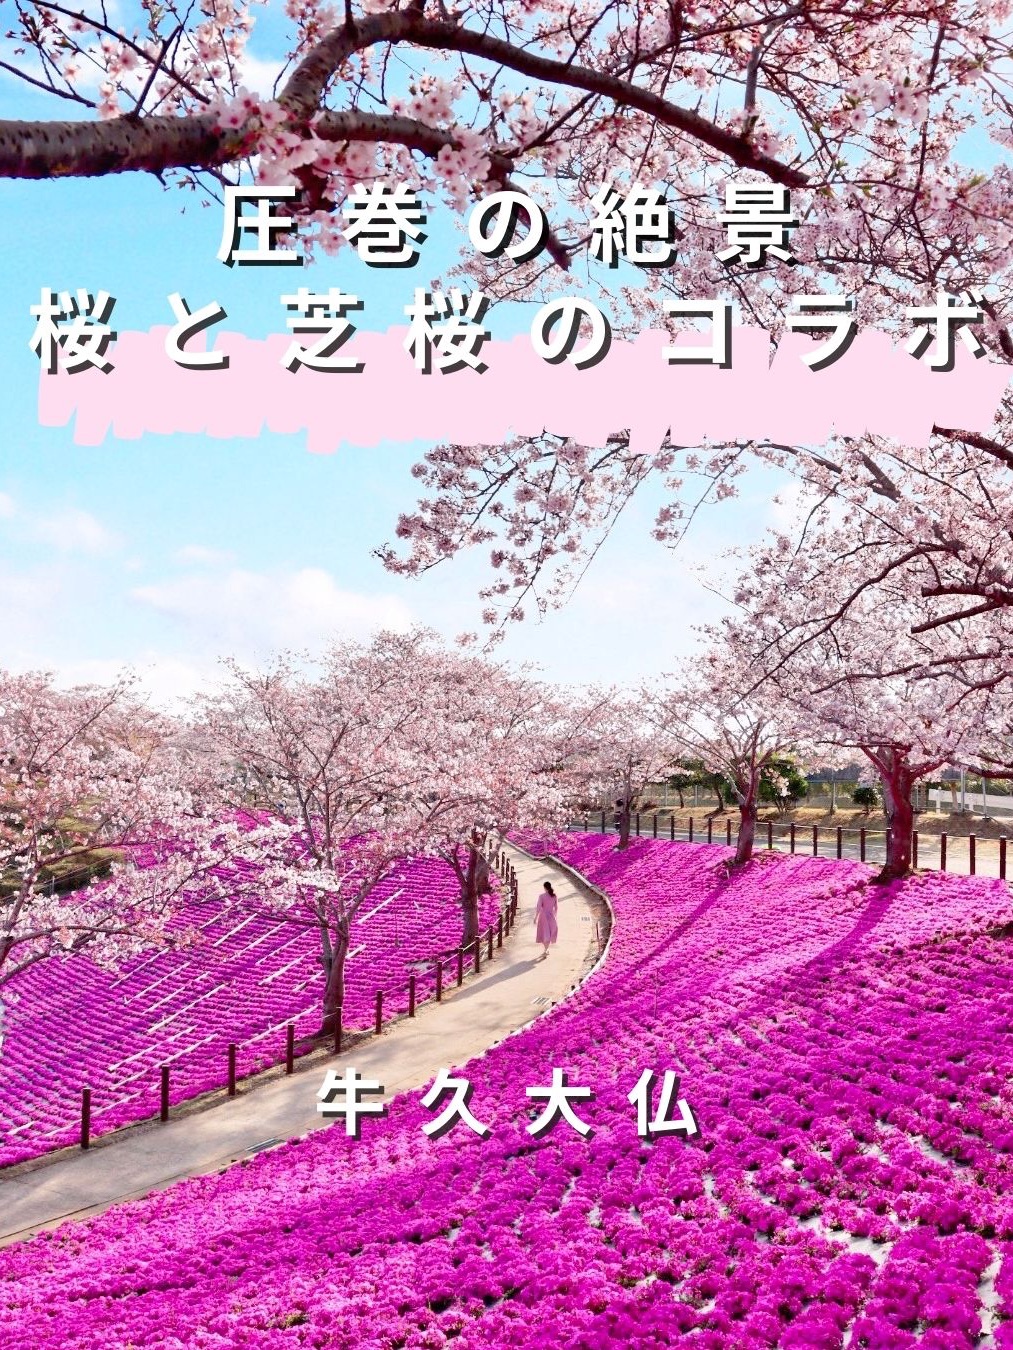 【茨城县】樱花与芝樱的合作景点